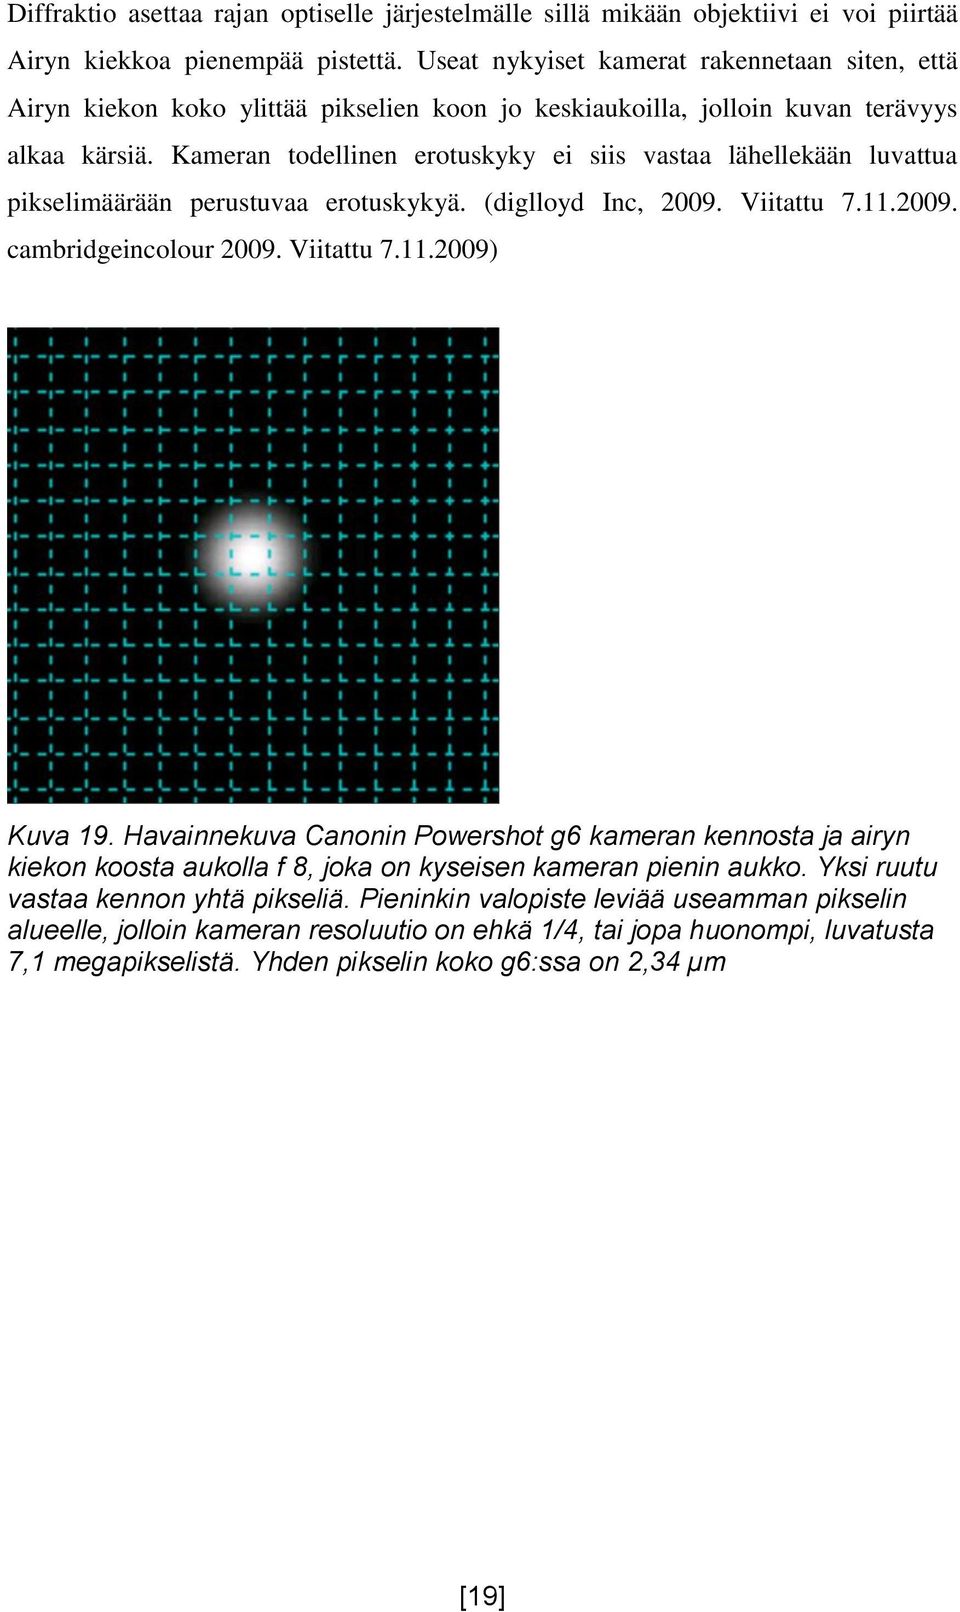 Kameran todellinen erotuskyky ei siis vastaa lähellekään luvattua pikselimäärään perustuvaa erotuskykyä. (diglloyd Inc, 2009. Viitattu 7.11.2009. cambridgeincolour 2009. Viitattu 7.11.2009) Kuva 19.